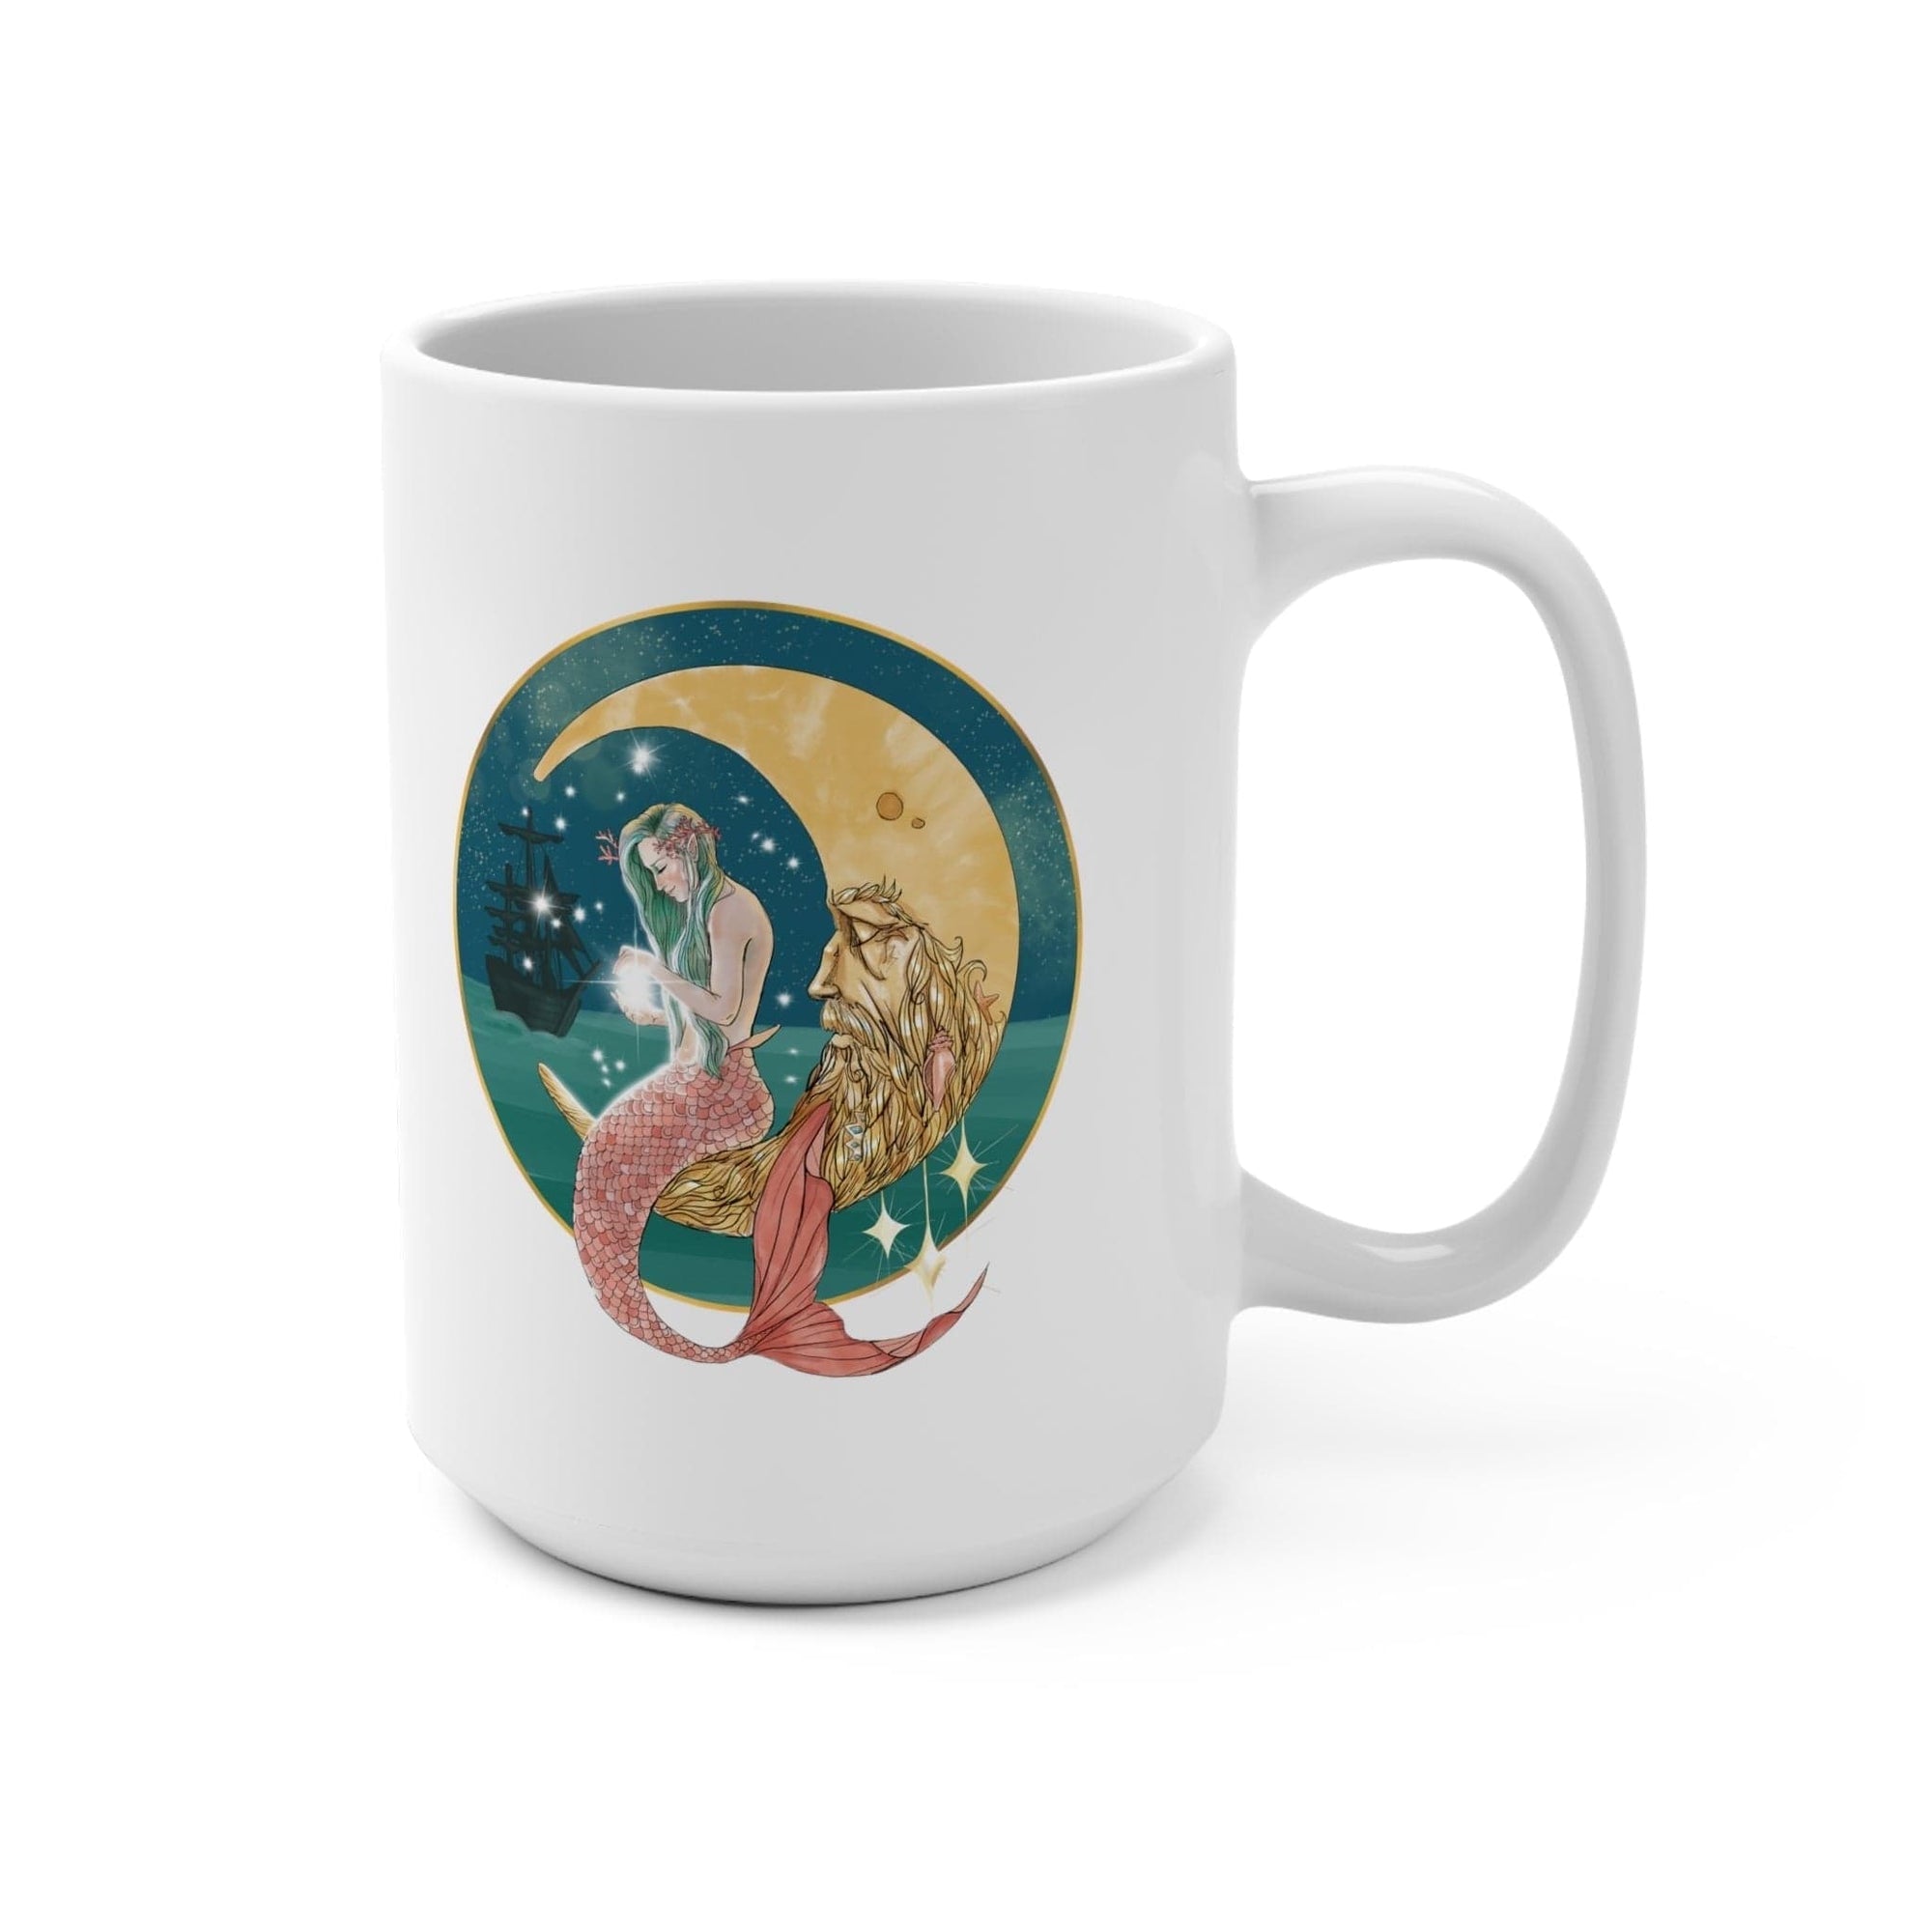 Mermaid In The Moon Coffee Mug - Mountains & Mermaids